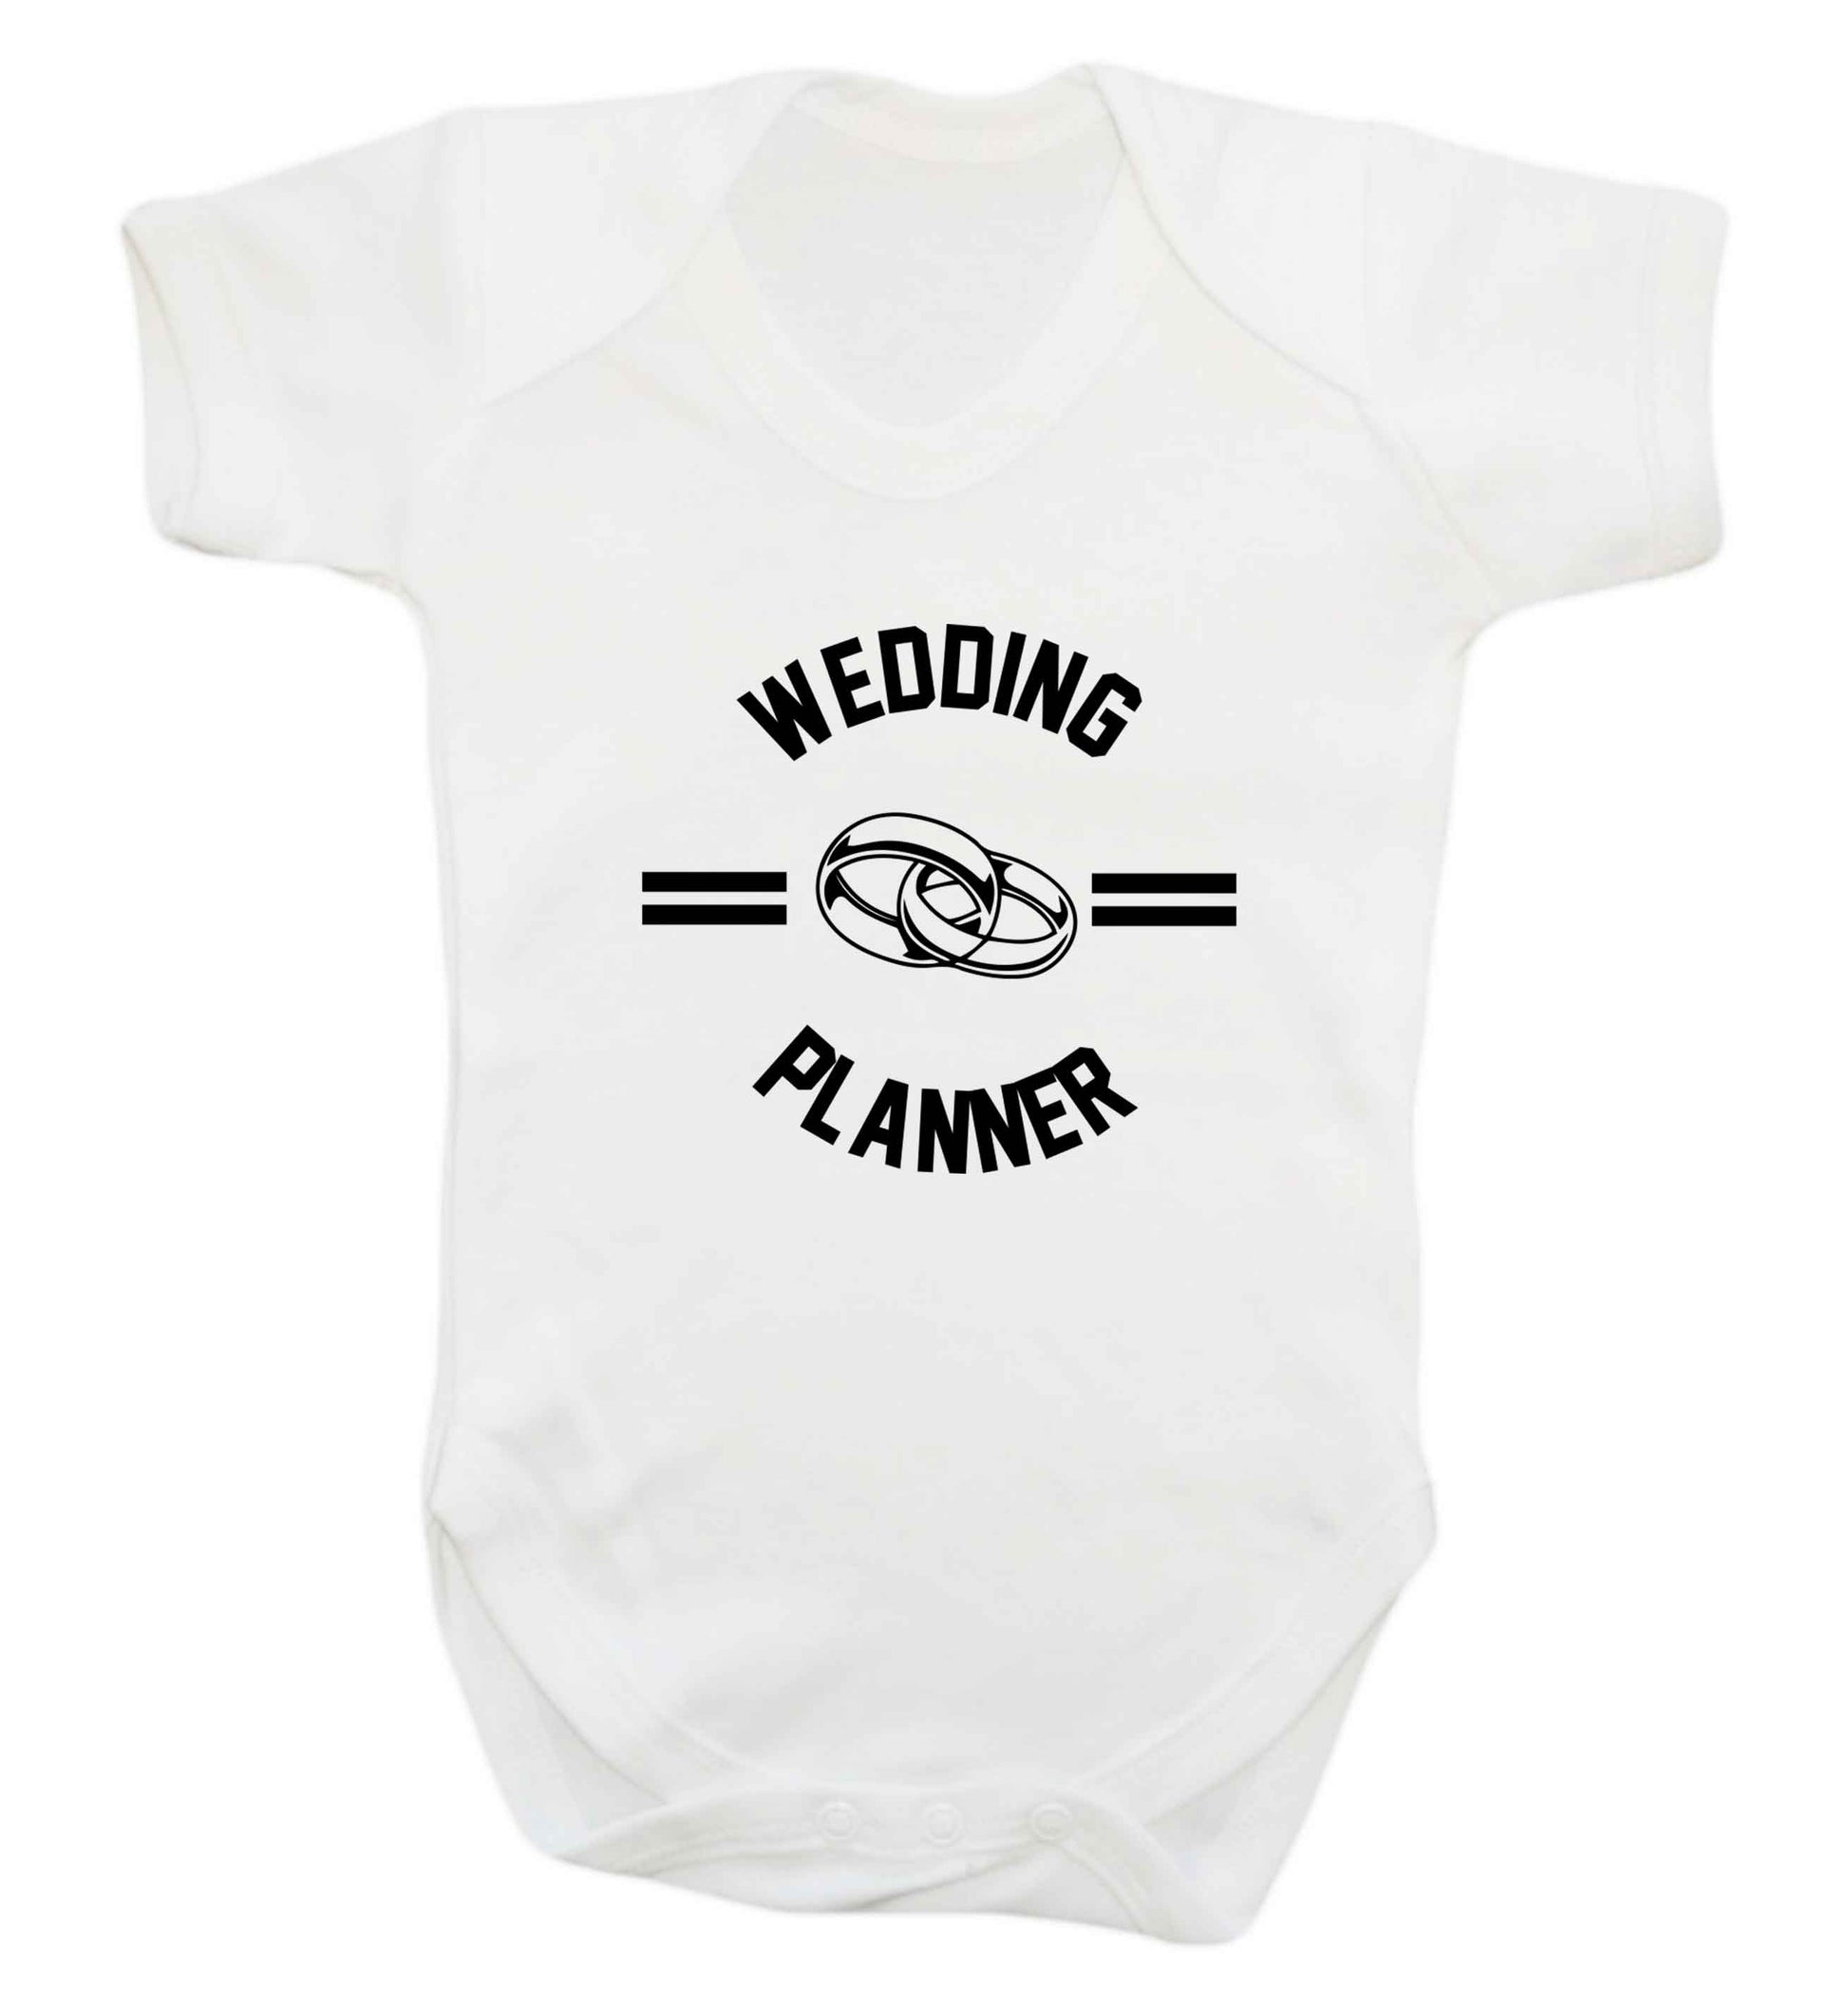 Wedding planner baby vest white 18-24 months